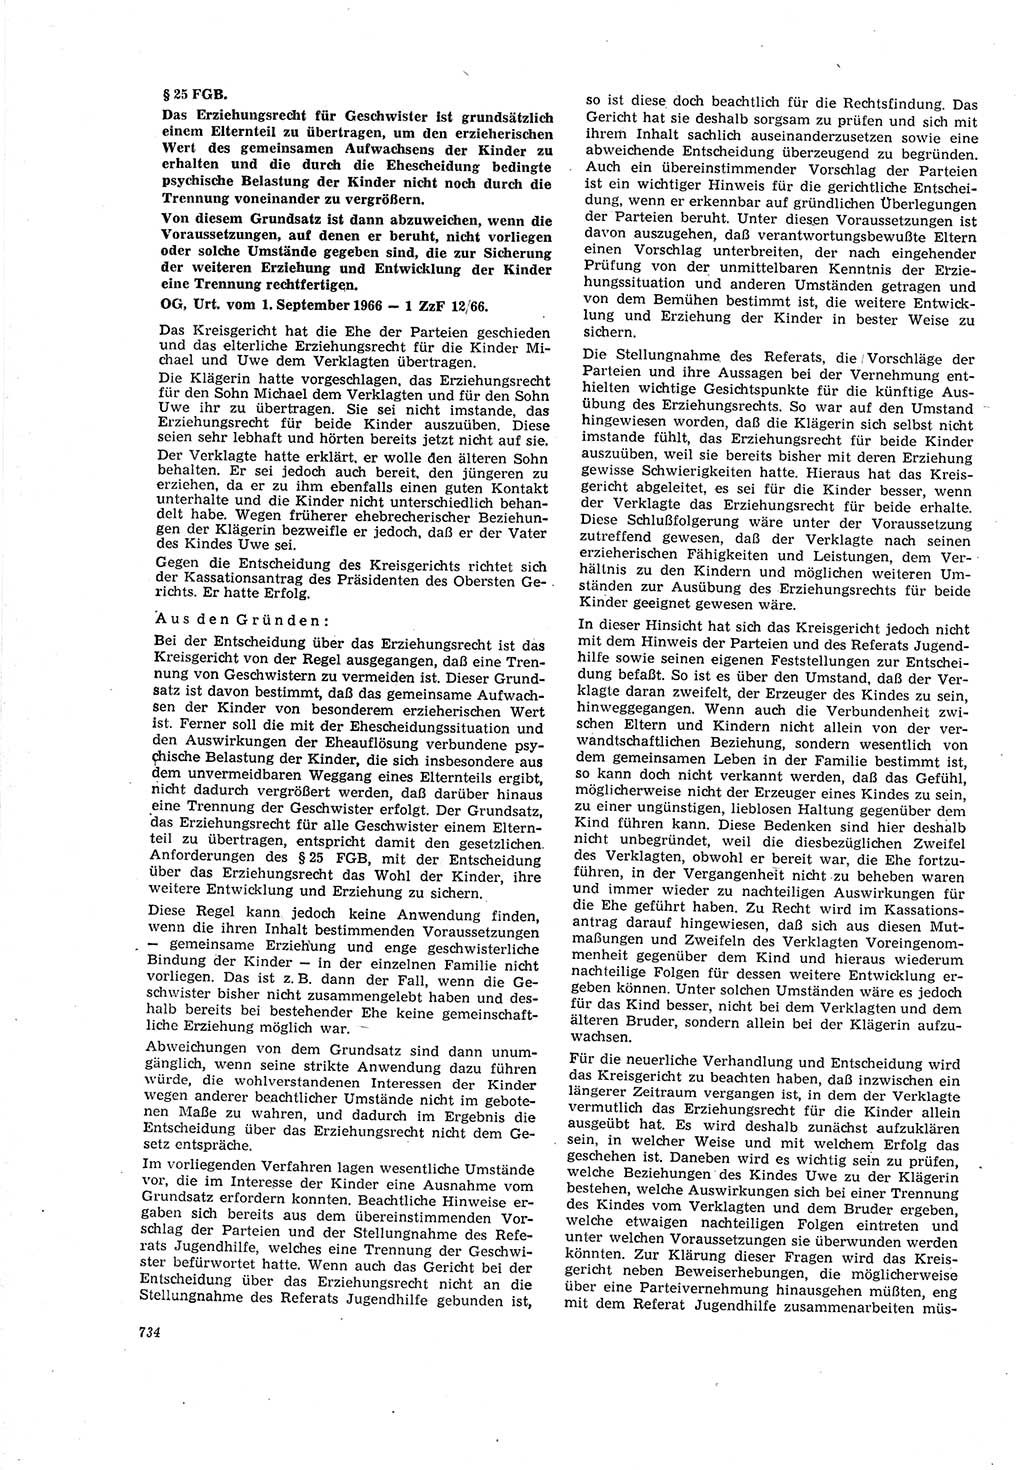 Neue Justiz (NJ), Zeitschrift für Recht und Rechtswissenschaft [Deutsche Demokratische Republik (DDR)], 20. Jahrgang 1966, Seite 734 (NJ DDR 1966, S. 734)